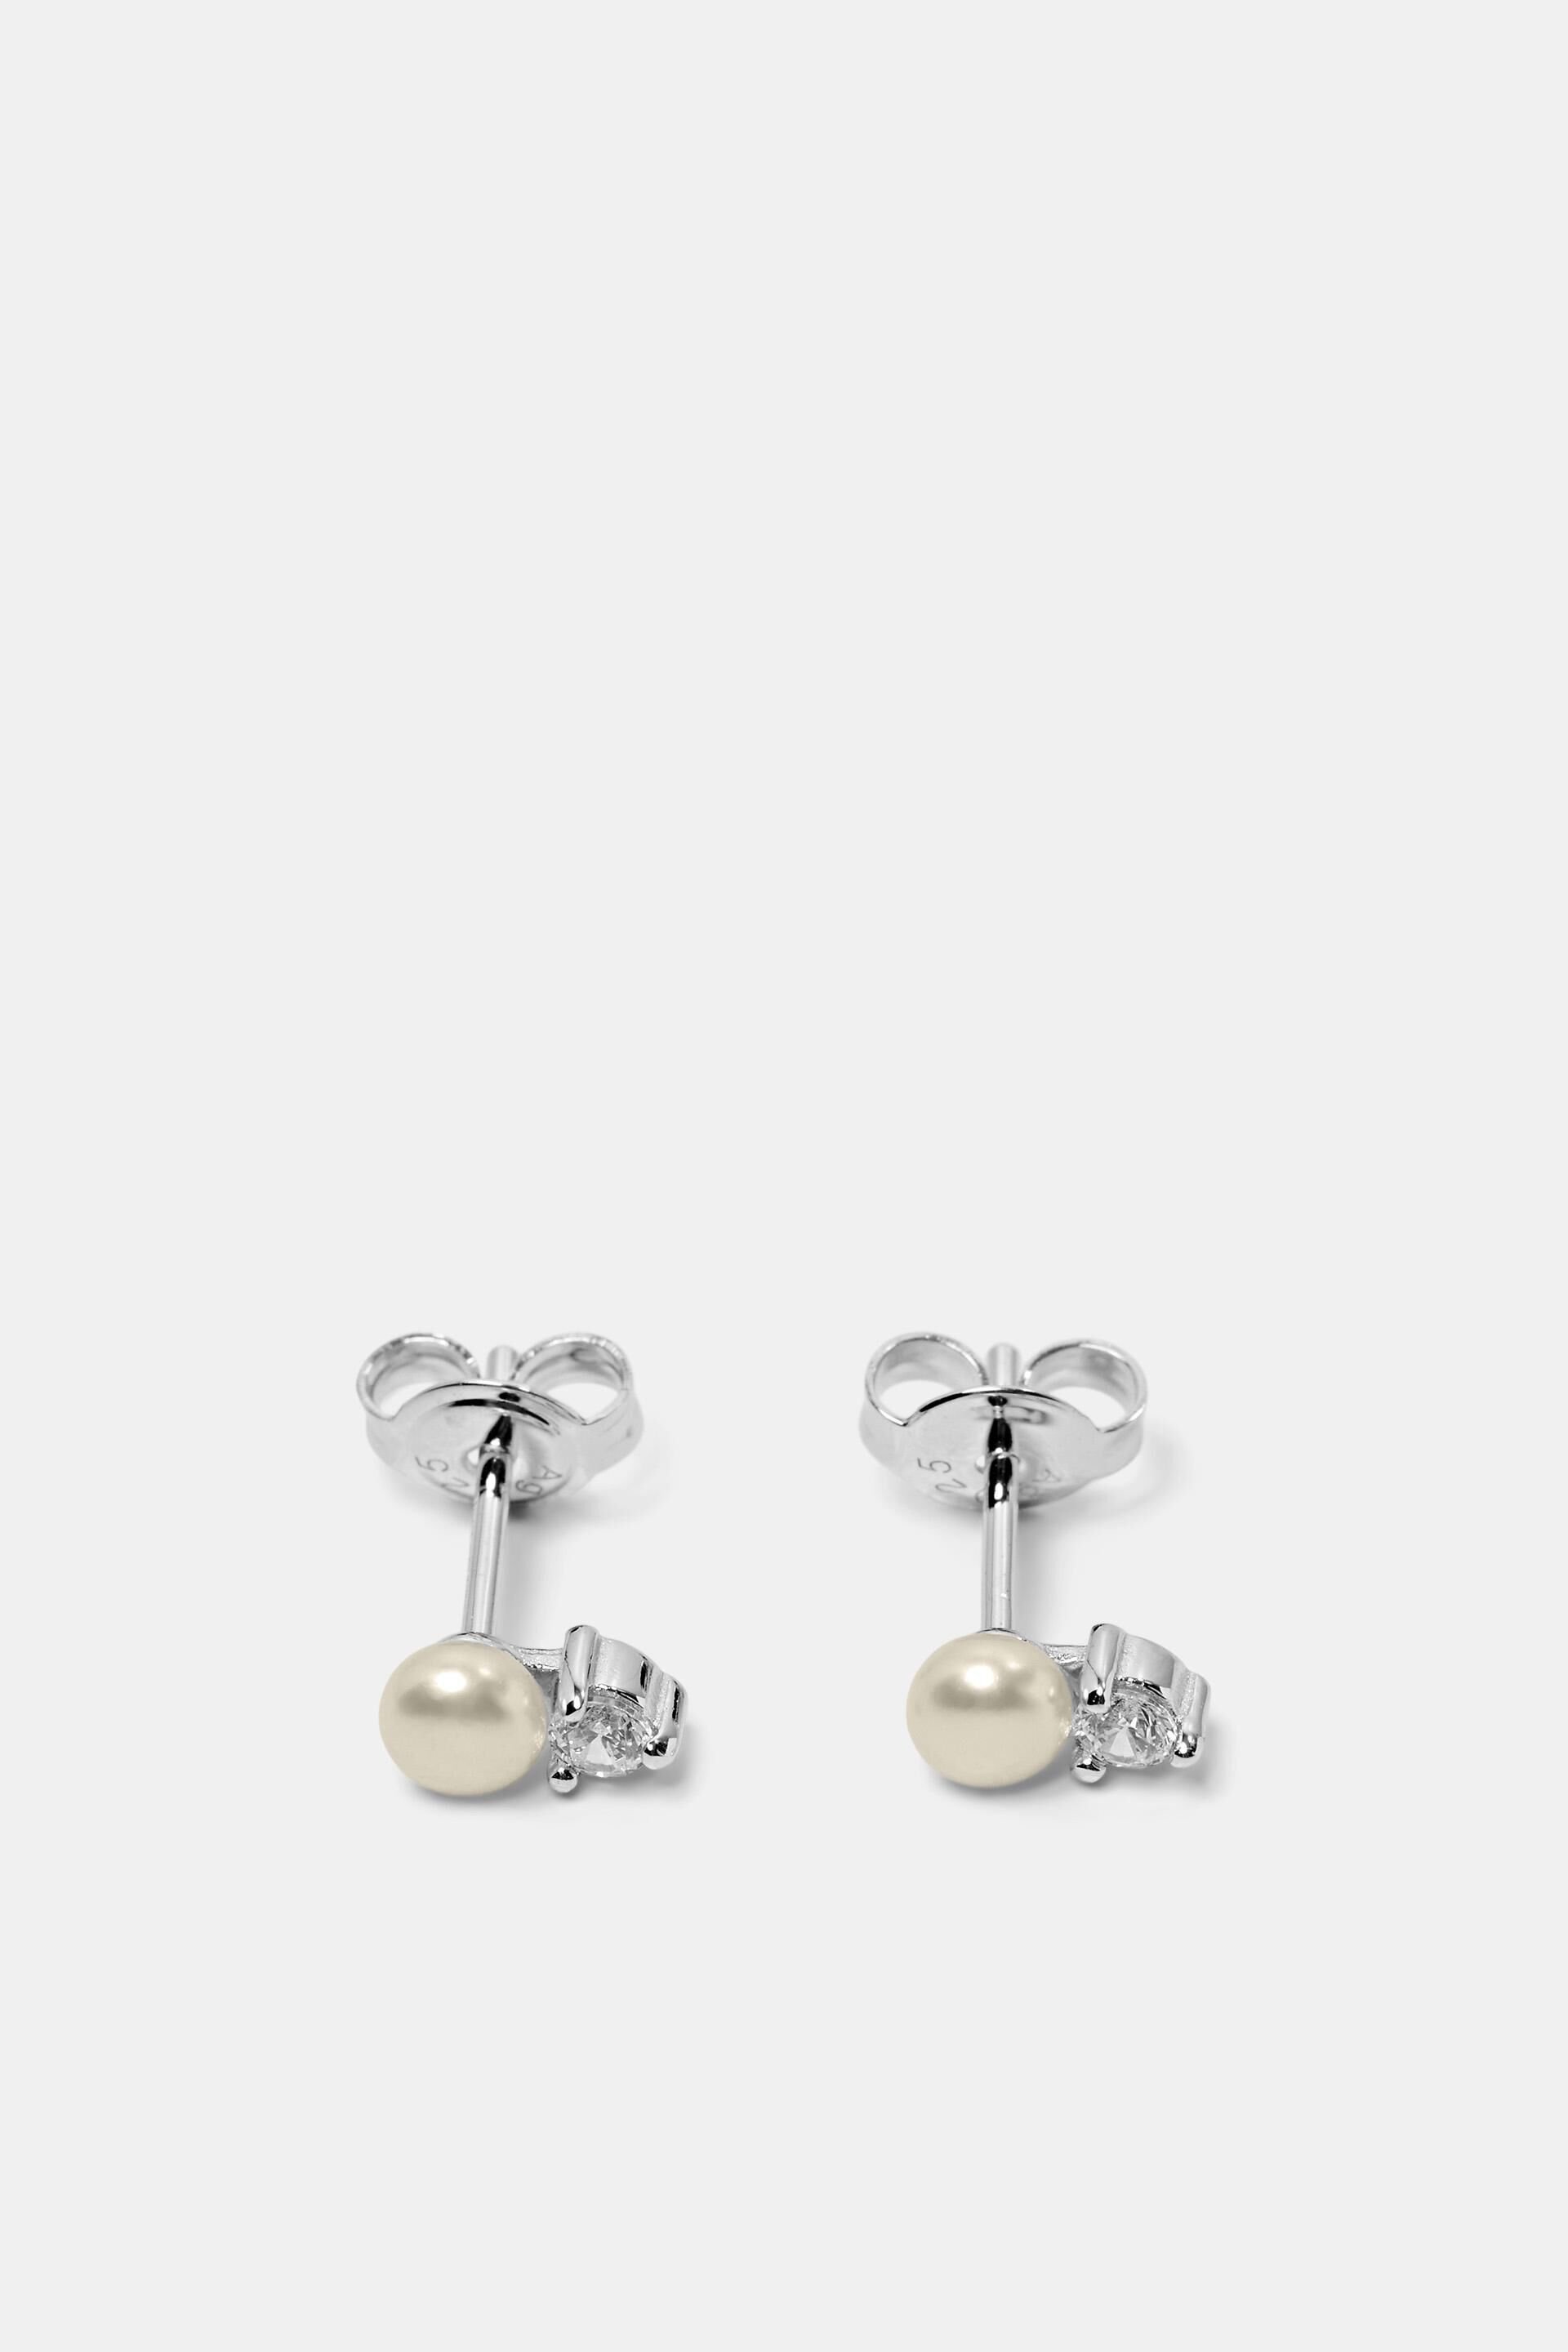 Esprit Silver Zirconia Sterling Earrings Cubic